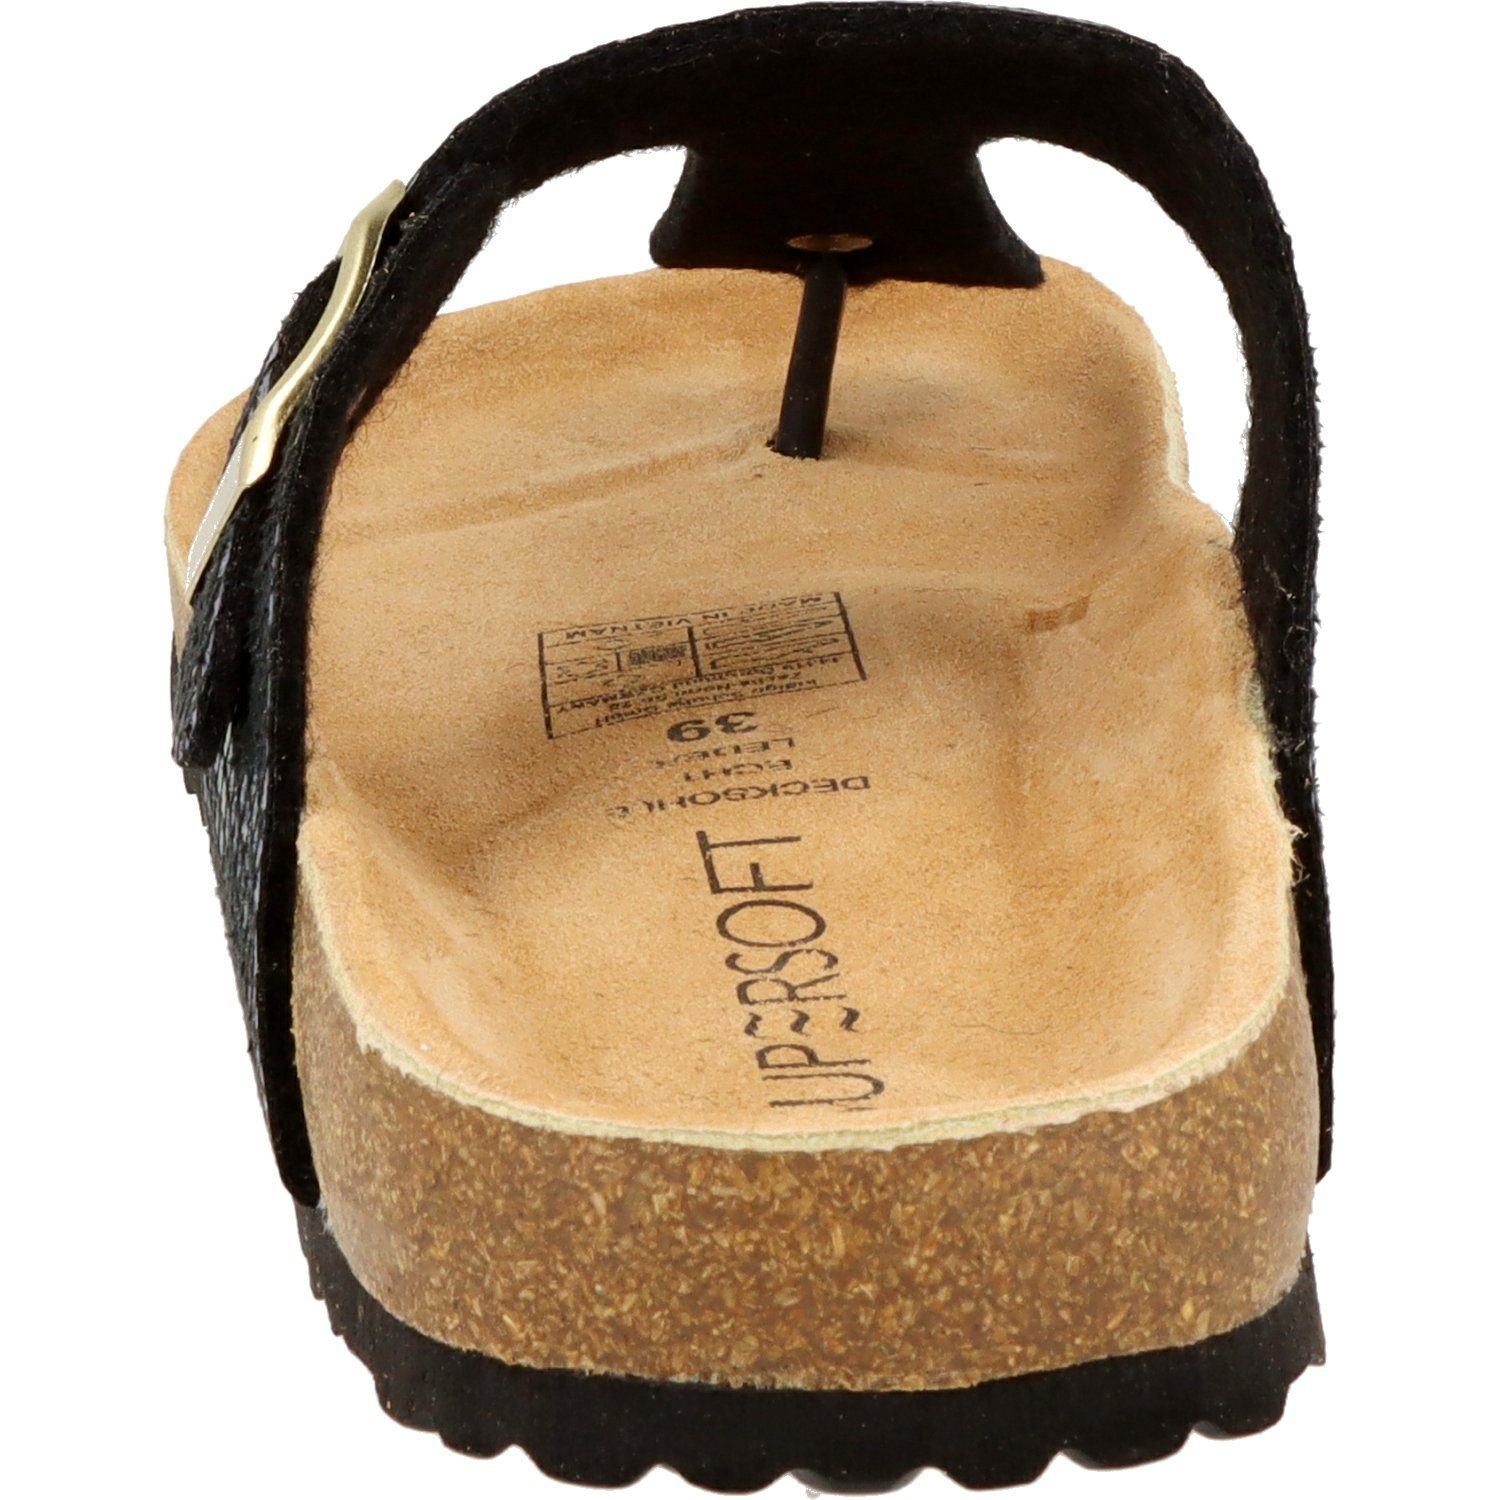 SUPERSOFT »274-709 Damen Pantoffeln Zehentrenner Hausschuhe Leder black  glänzend« Zehentrenner online kaufen | OTTO